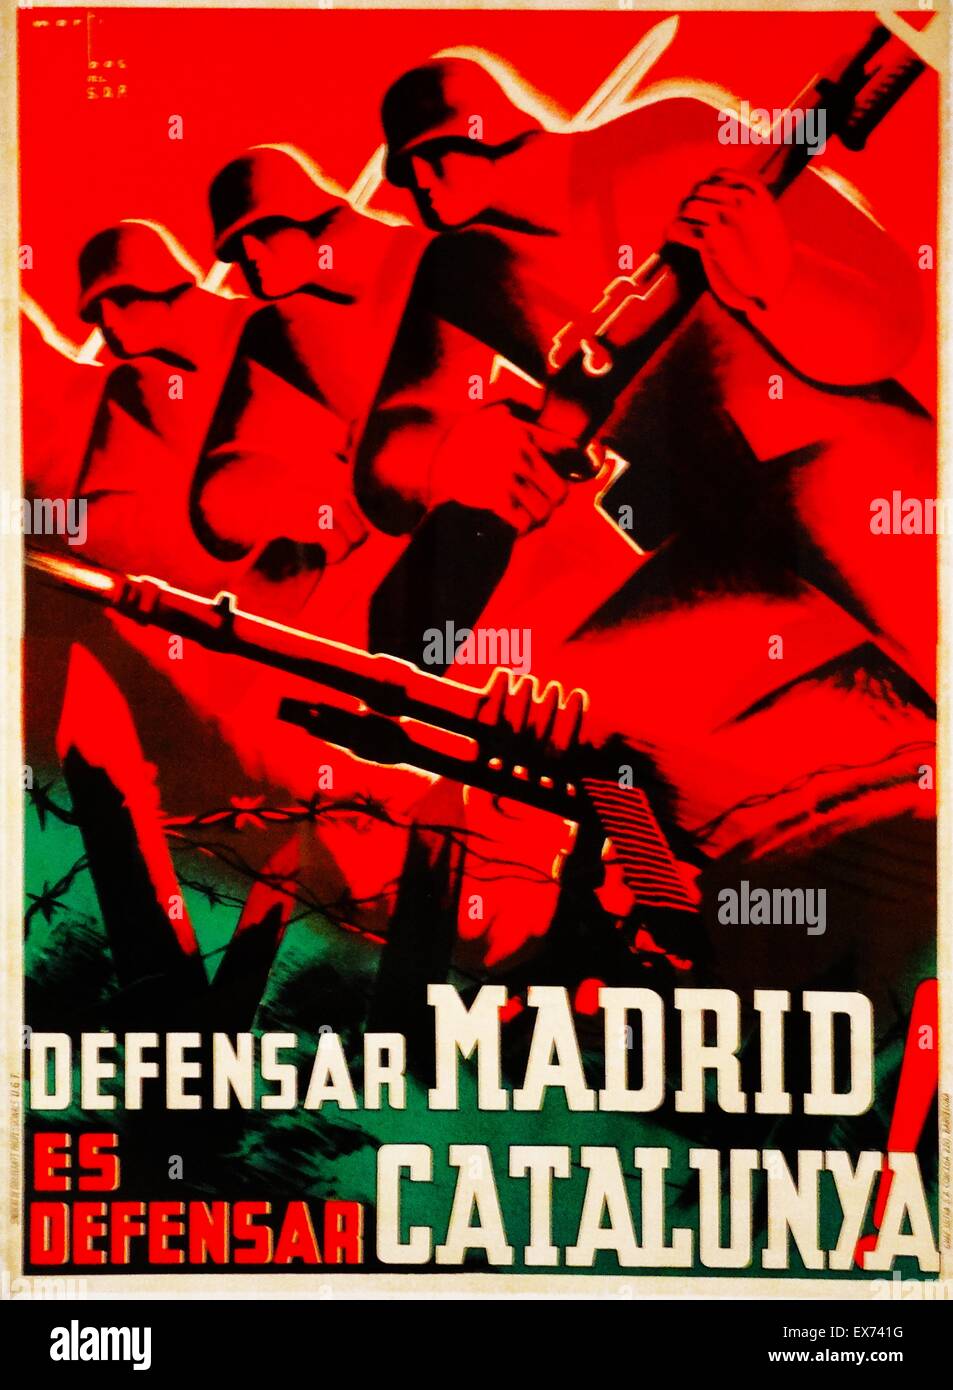 Defensar Madrid es Defensar Catalunya!; Um Madrid zu verteidigen ist Catalonia zu verteidigen. Spanischen Bürgerkrieg Propagandaplakat von Marti Bas, geboren 1910 - starb 1966 (Künstler). Martí Bas gehoerte der SDP (Syndicate of Professional Designers), eine pro-republikanische Gruppe Stockfoto